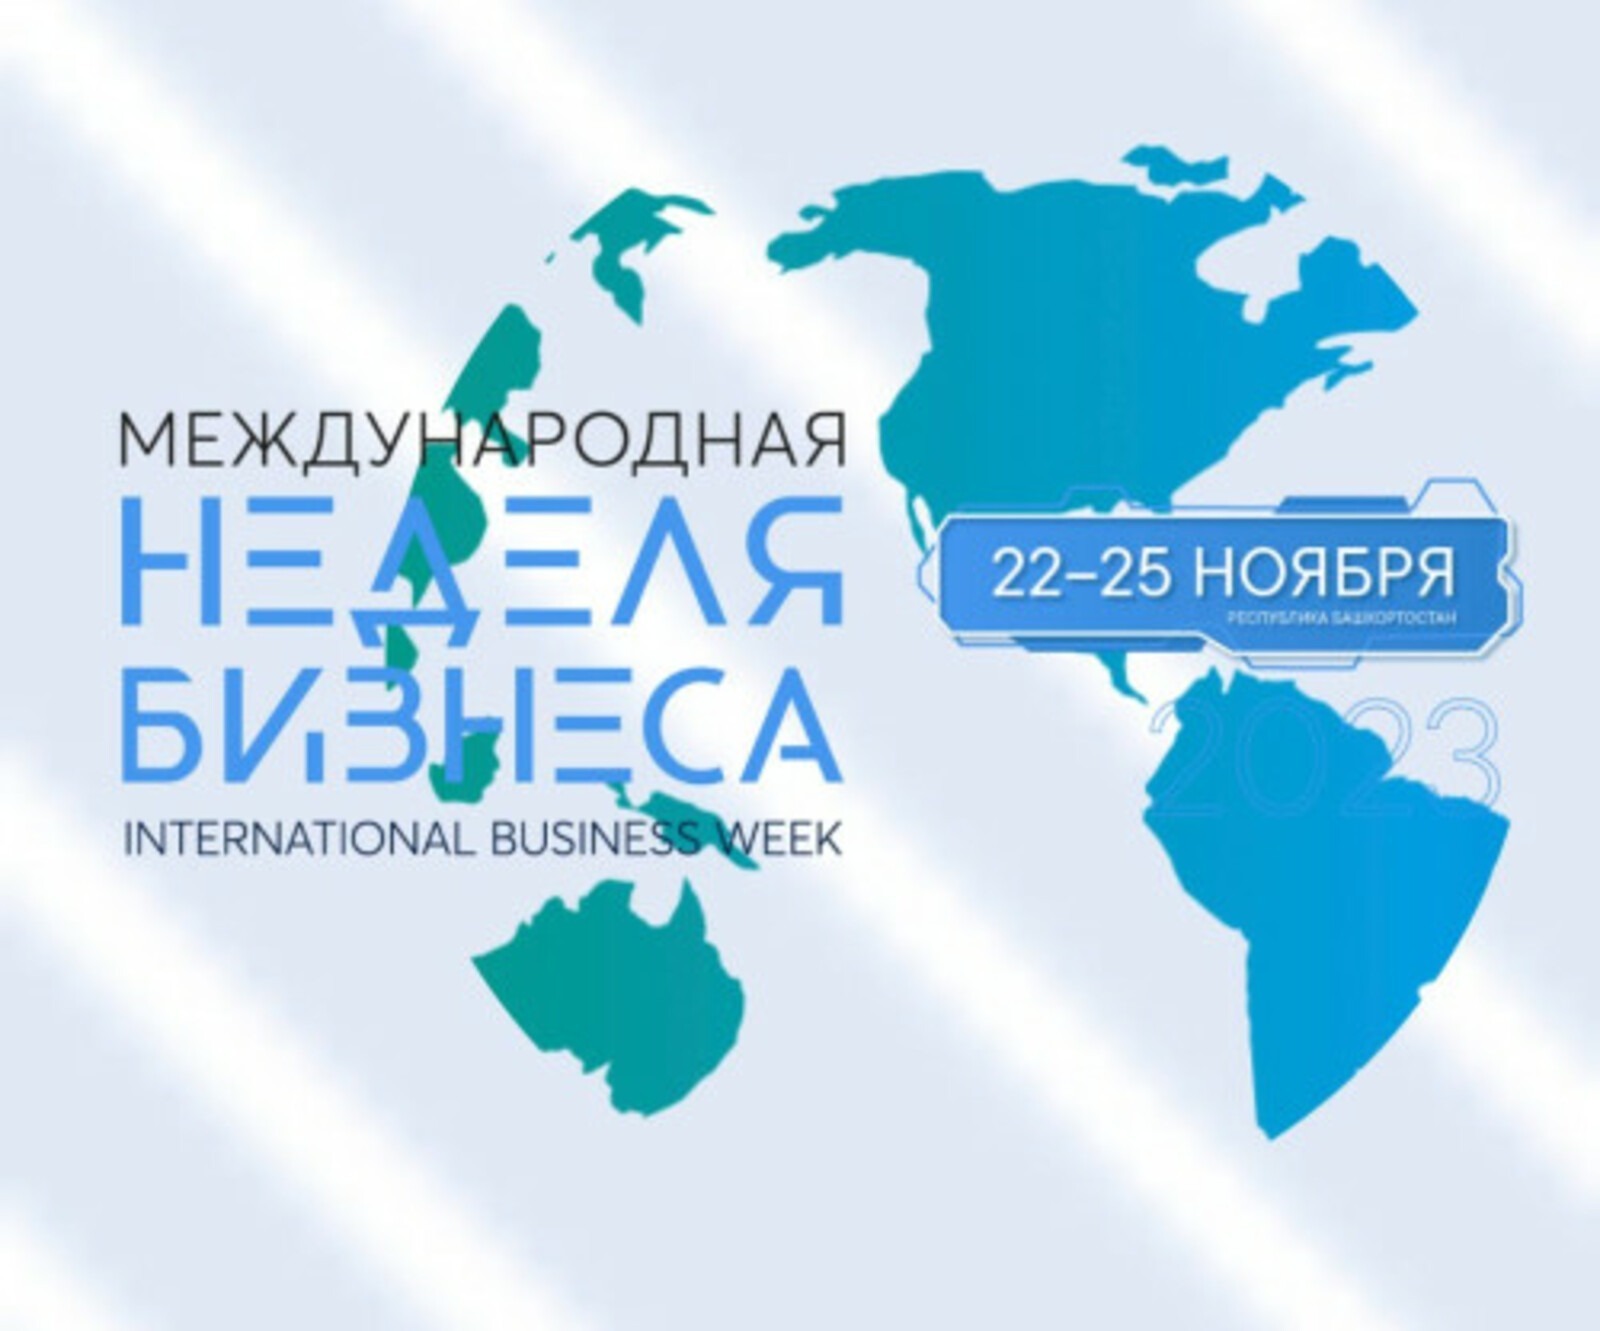 Мария Захарова рассказала о предстоящей Международной неделе бизнеса в Уфе